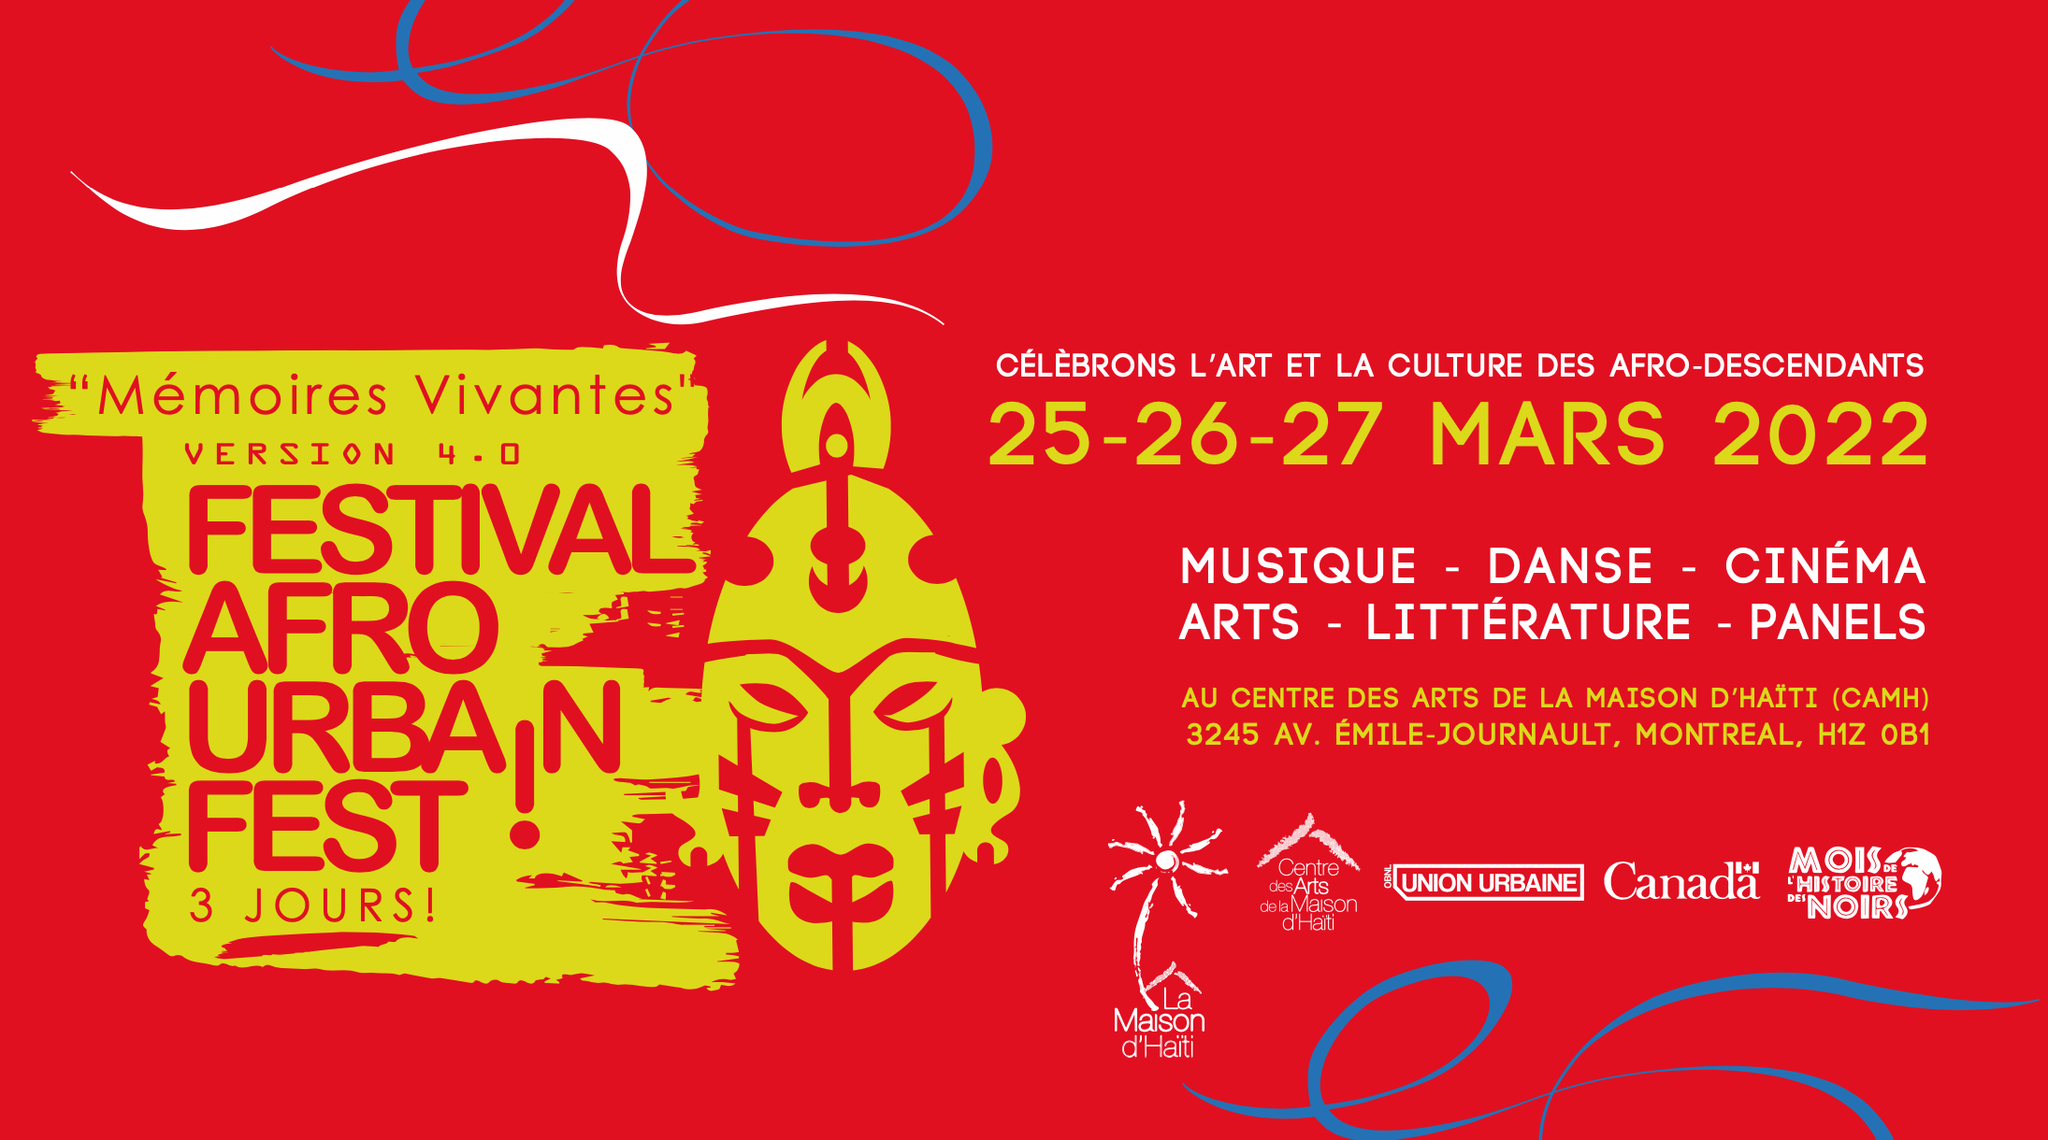 Le Festival Afro Urbain, revient pour une 4e édition, les 25-26-27 mars 2022!